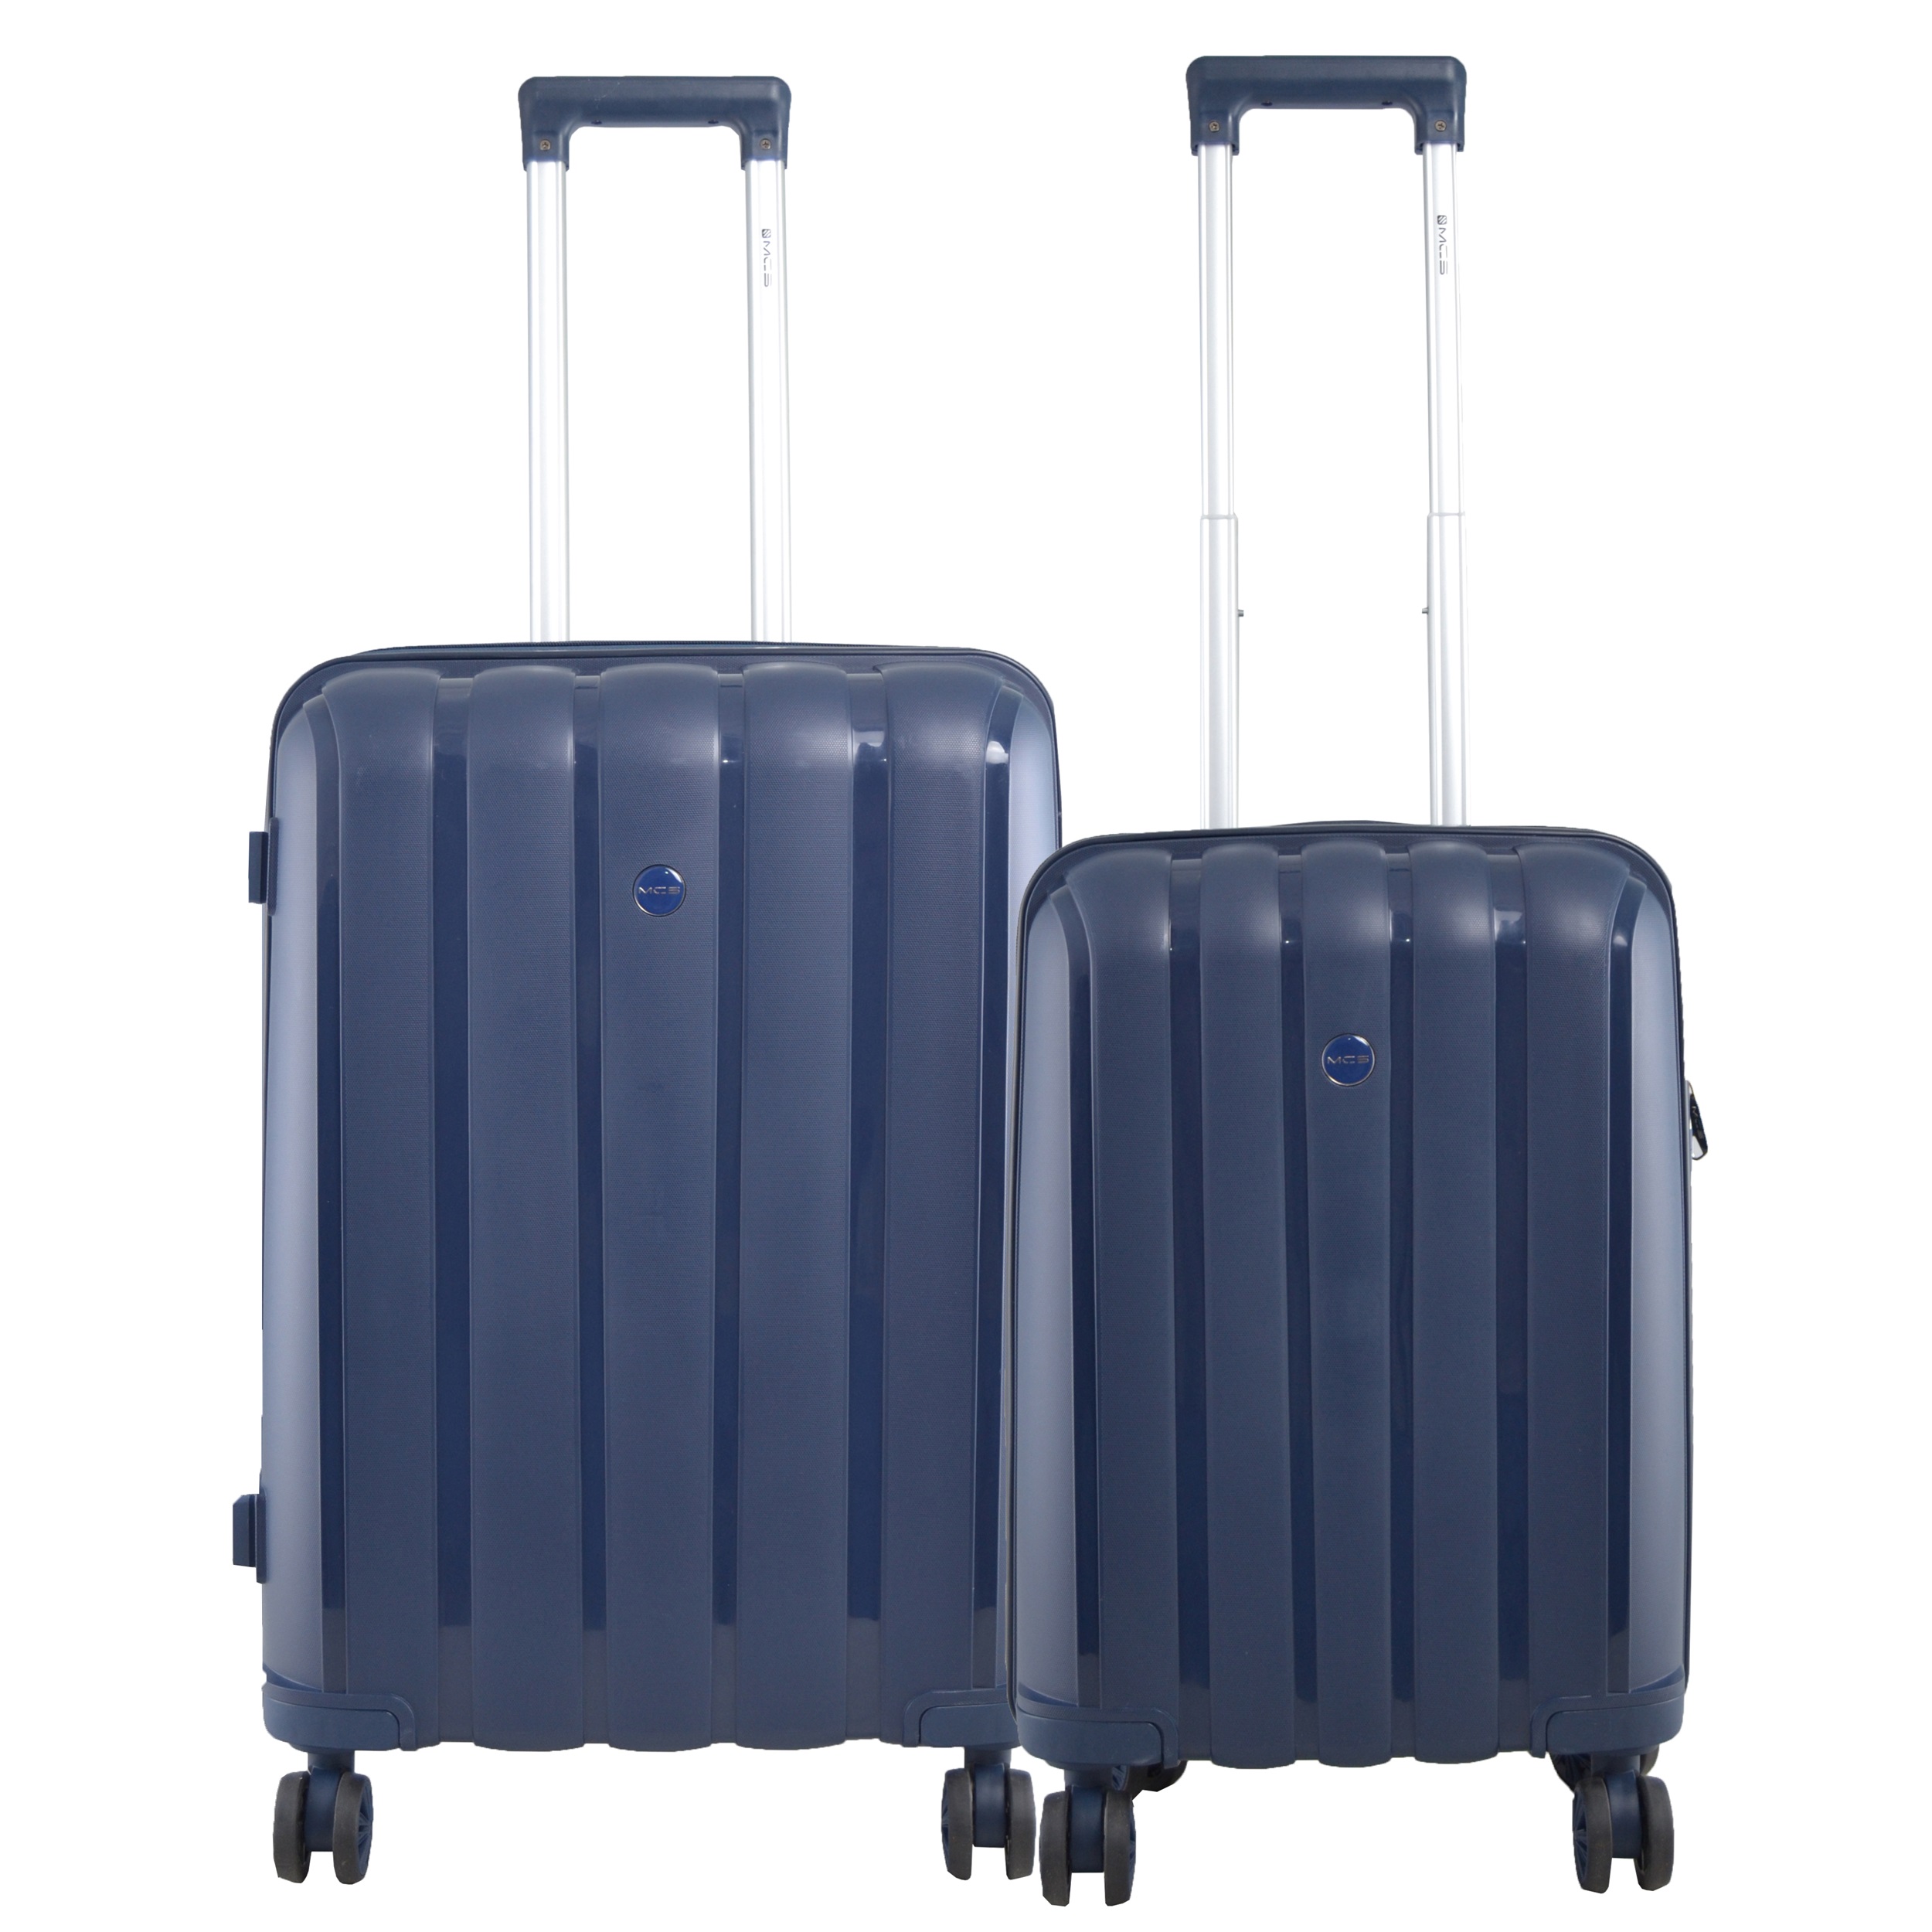 مجموعه دو عددی چمدان ام سی اس مدل V305 سایز متوسط و کوچک